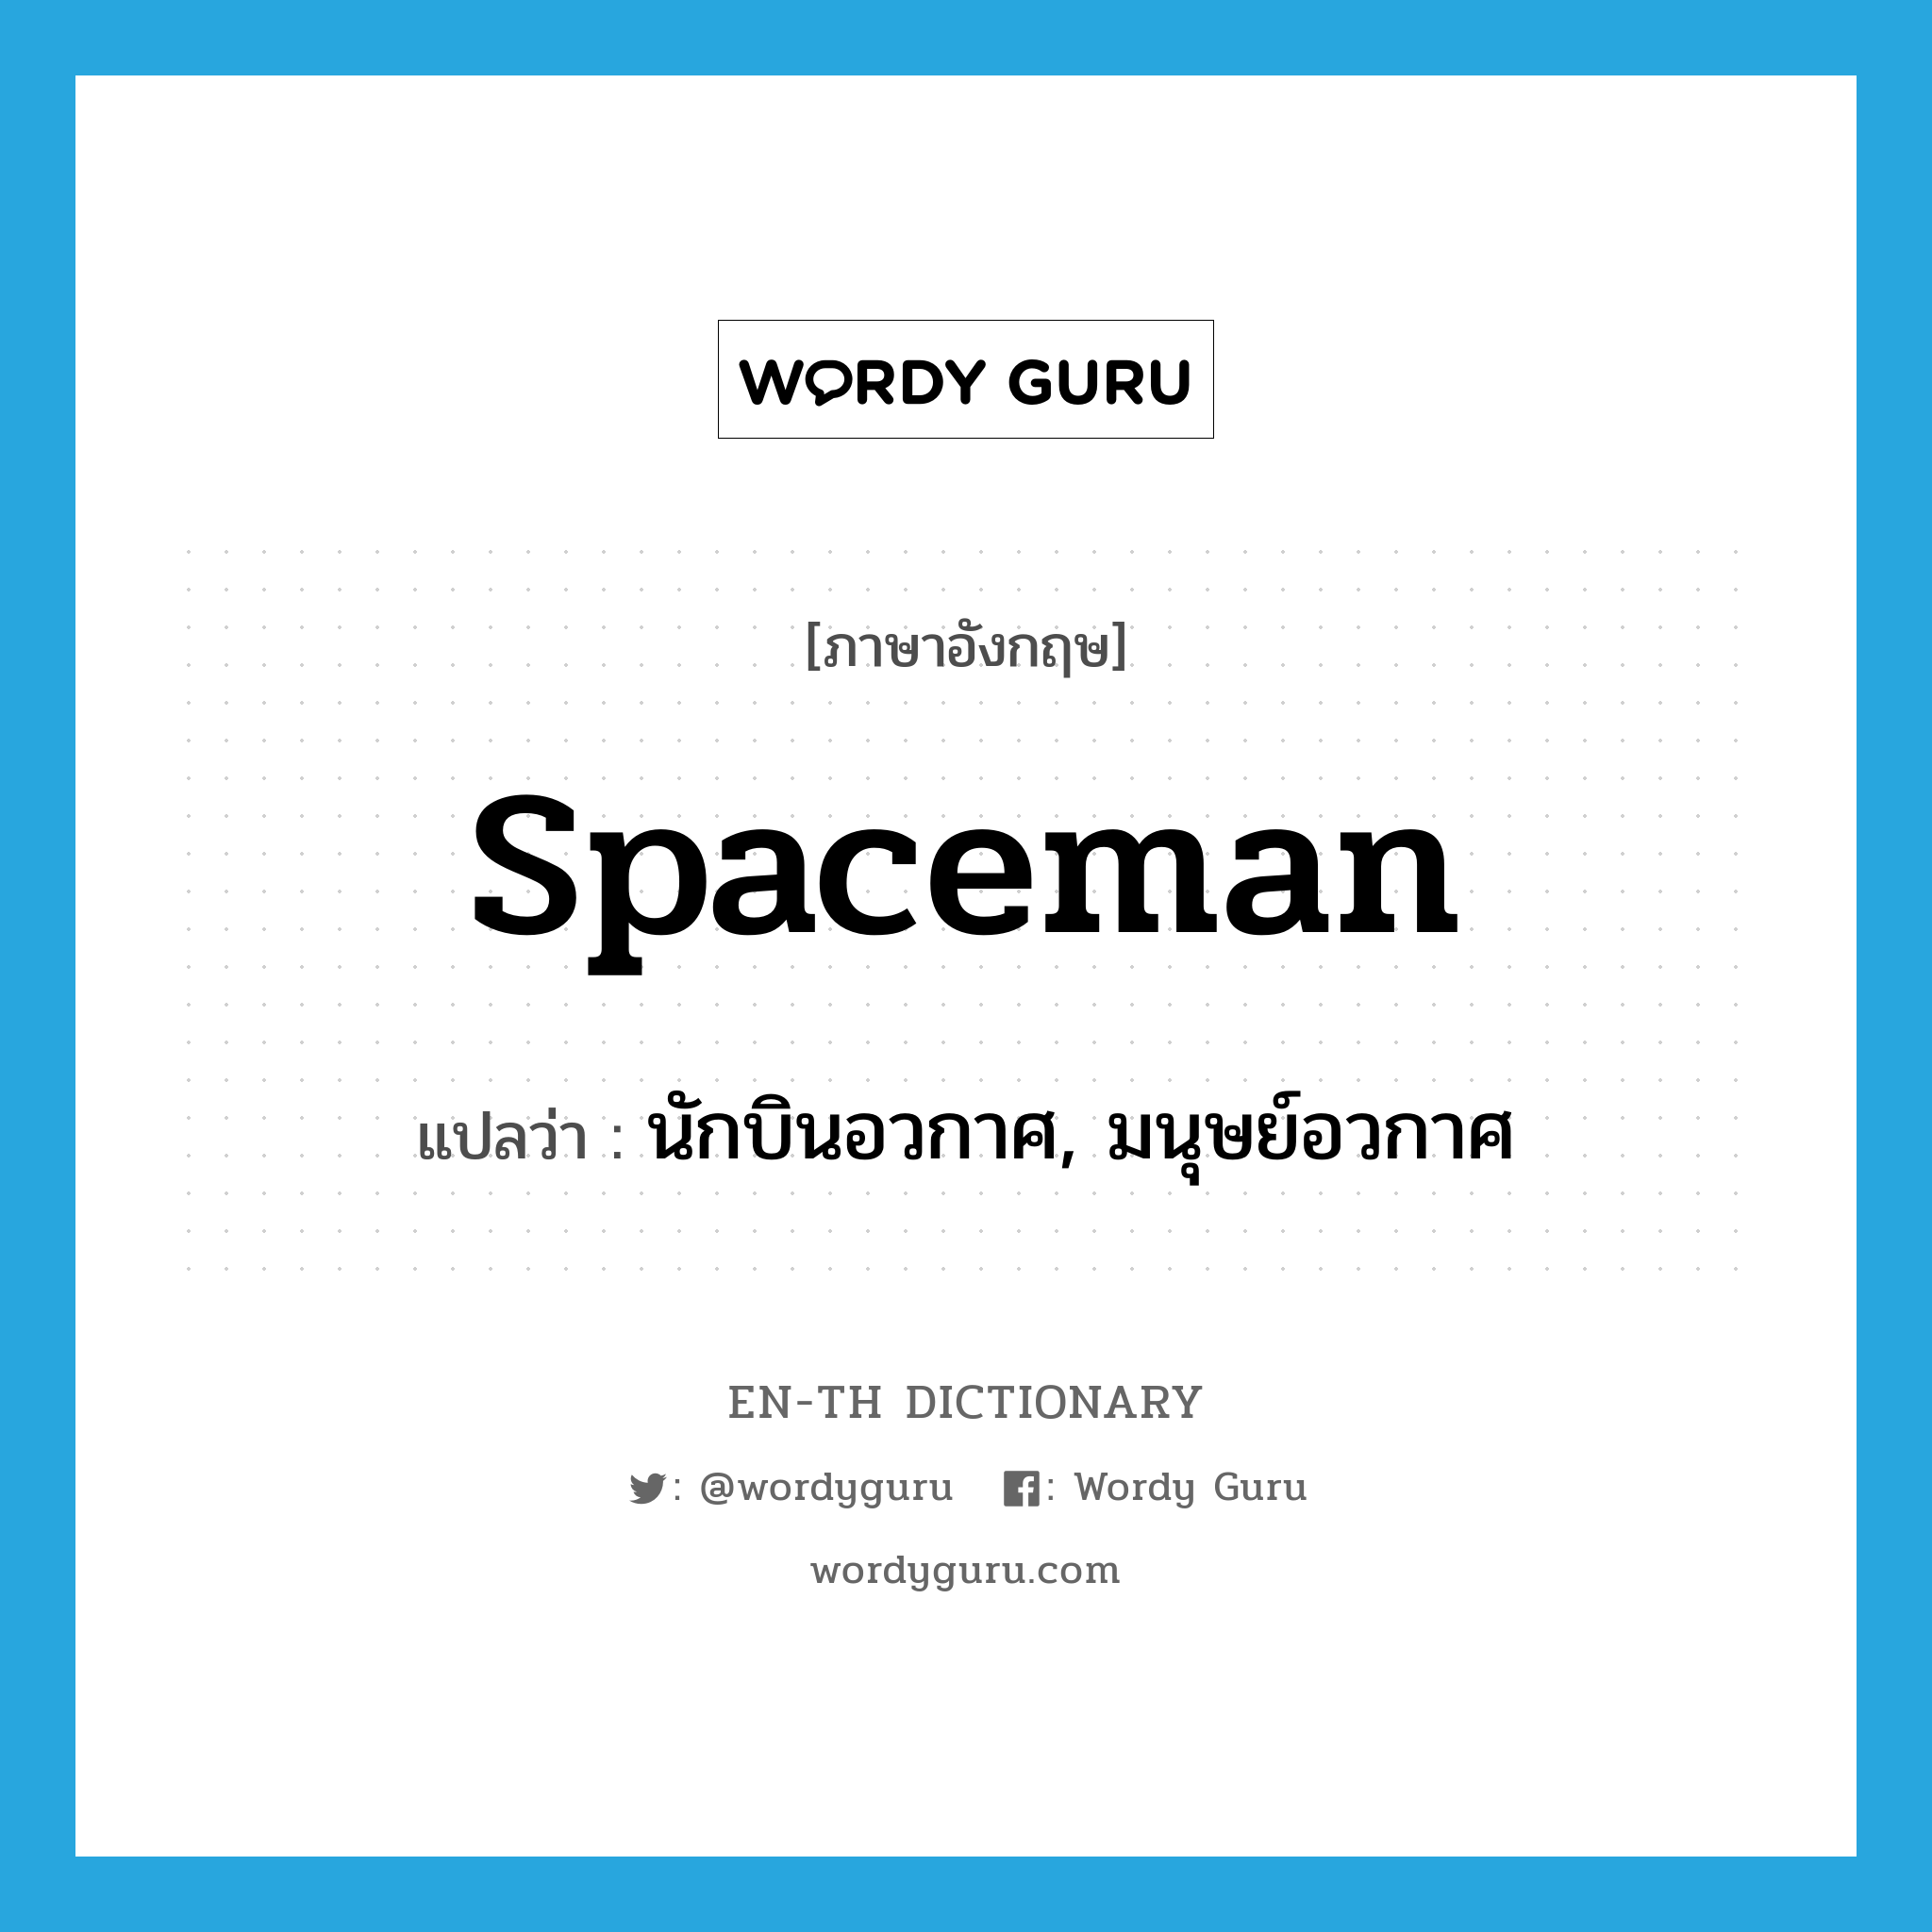 นักบินอวกาศ, มนุษย์อวกาศ ภาษาอังกฤษ?, คำศัพท์ภาษาอังกฤษ นักบินอวกาศ, มนุษย์อวกาศ แปลว่า spaceman ประเภท N หมวด N